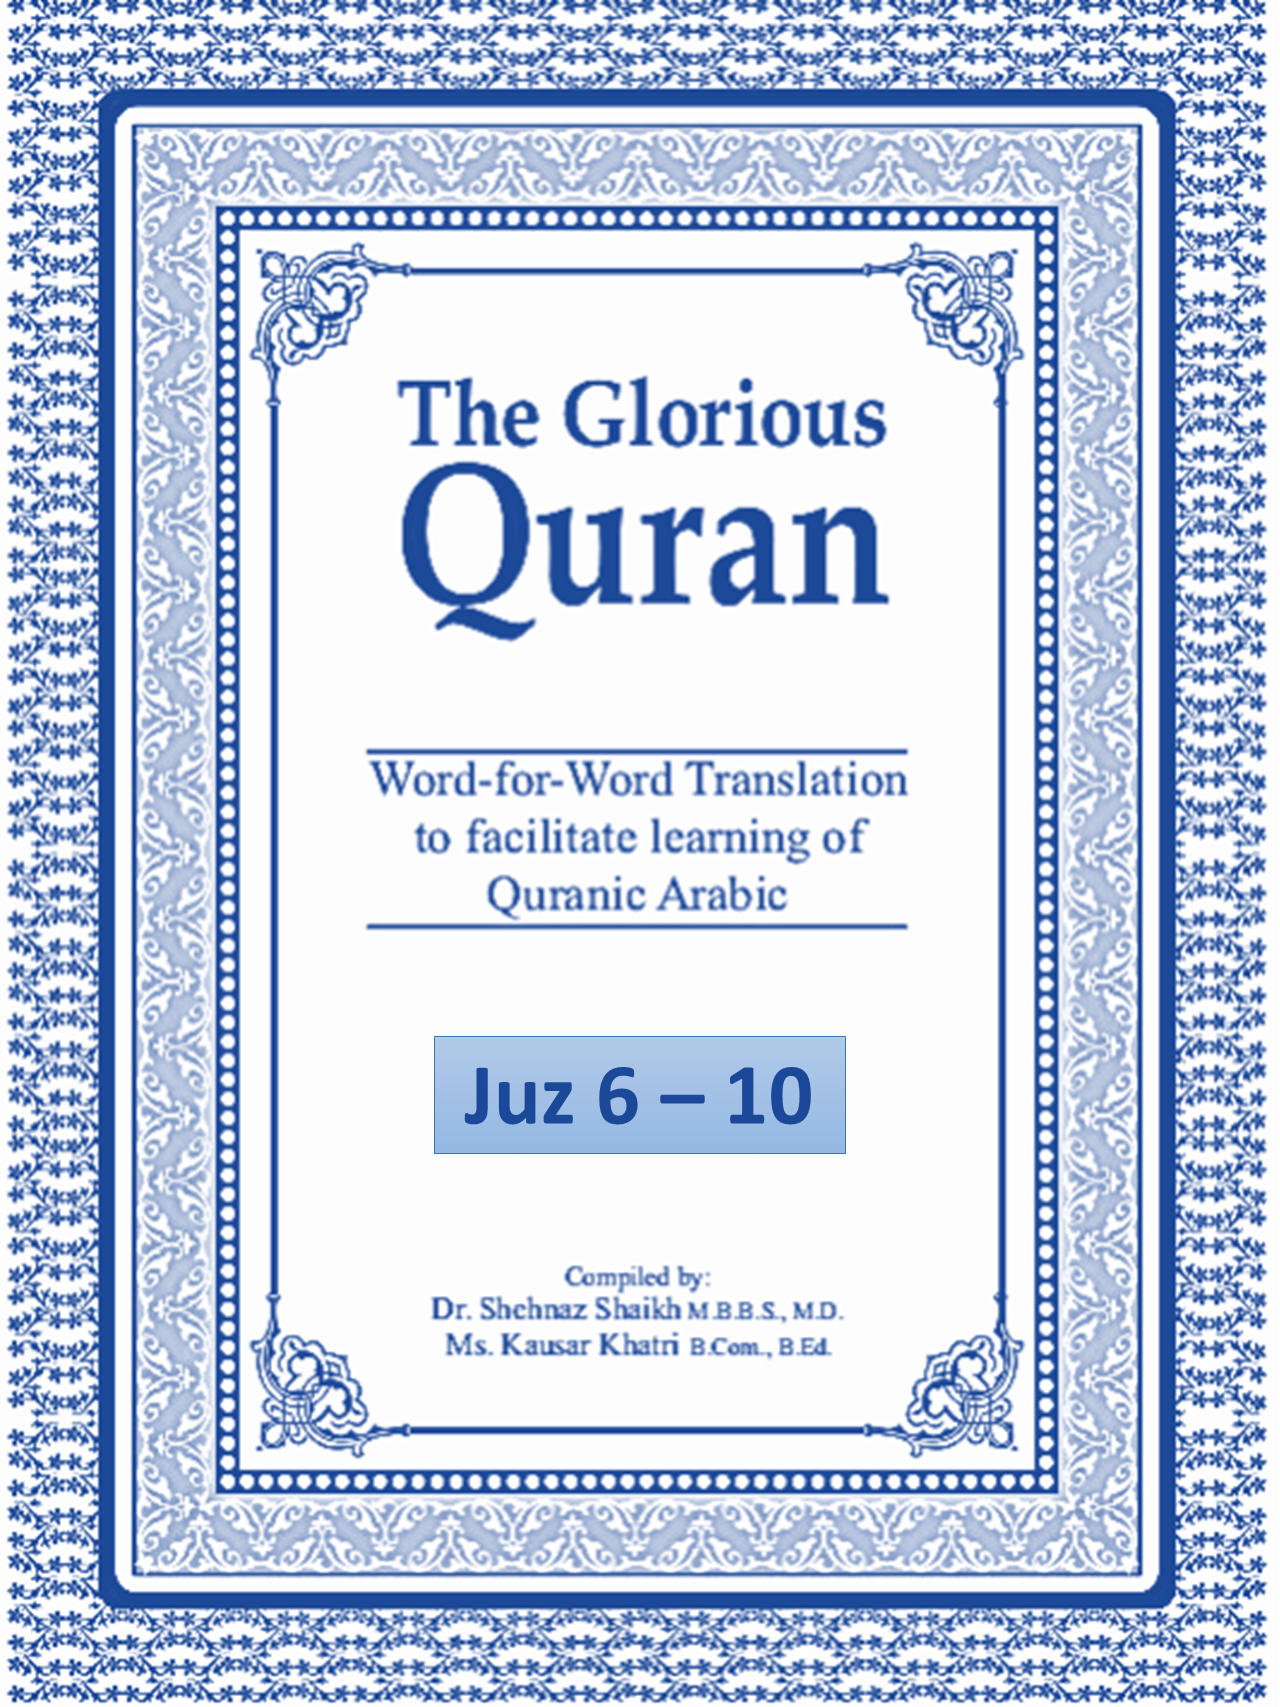 The Glorious Quran Vol 1 (Juz 6-10)